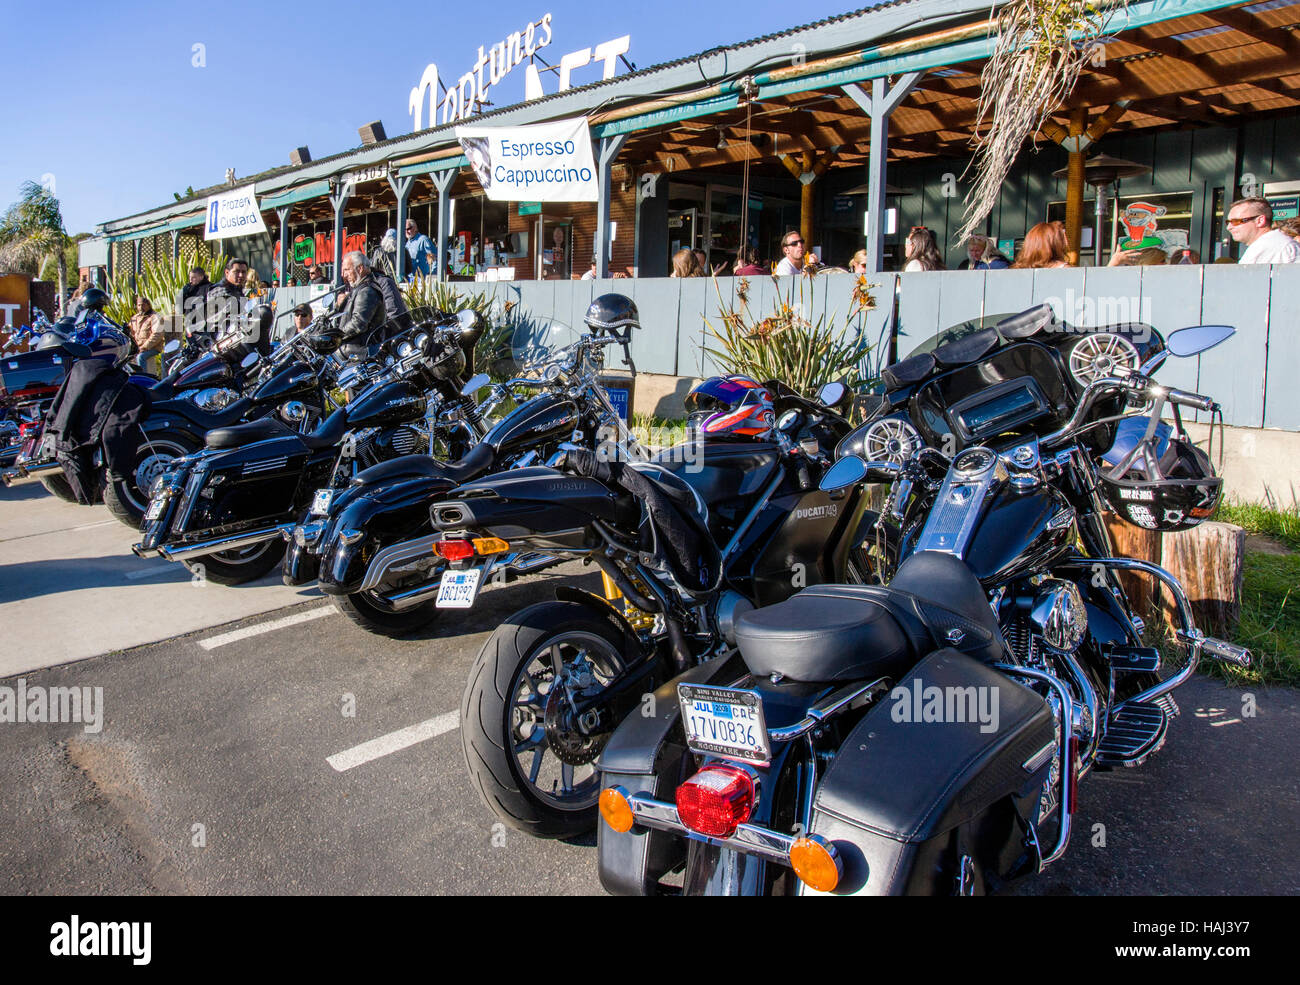 Motocyclettes Harley Davidson garée devant le Neptune's Restaurant de fruits de mer Net sur la Rt. 1 à Malibu, Californie, USA Banque D'Images